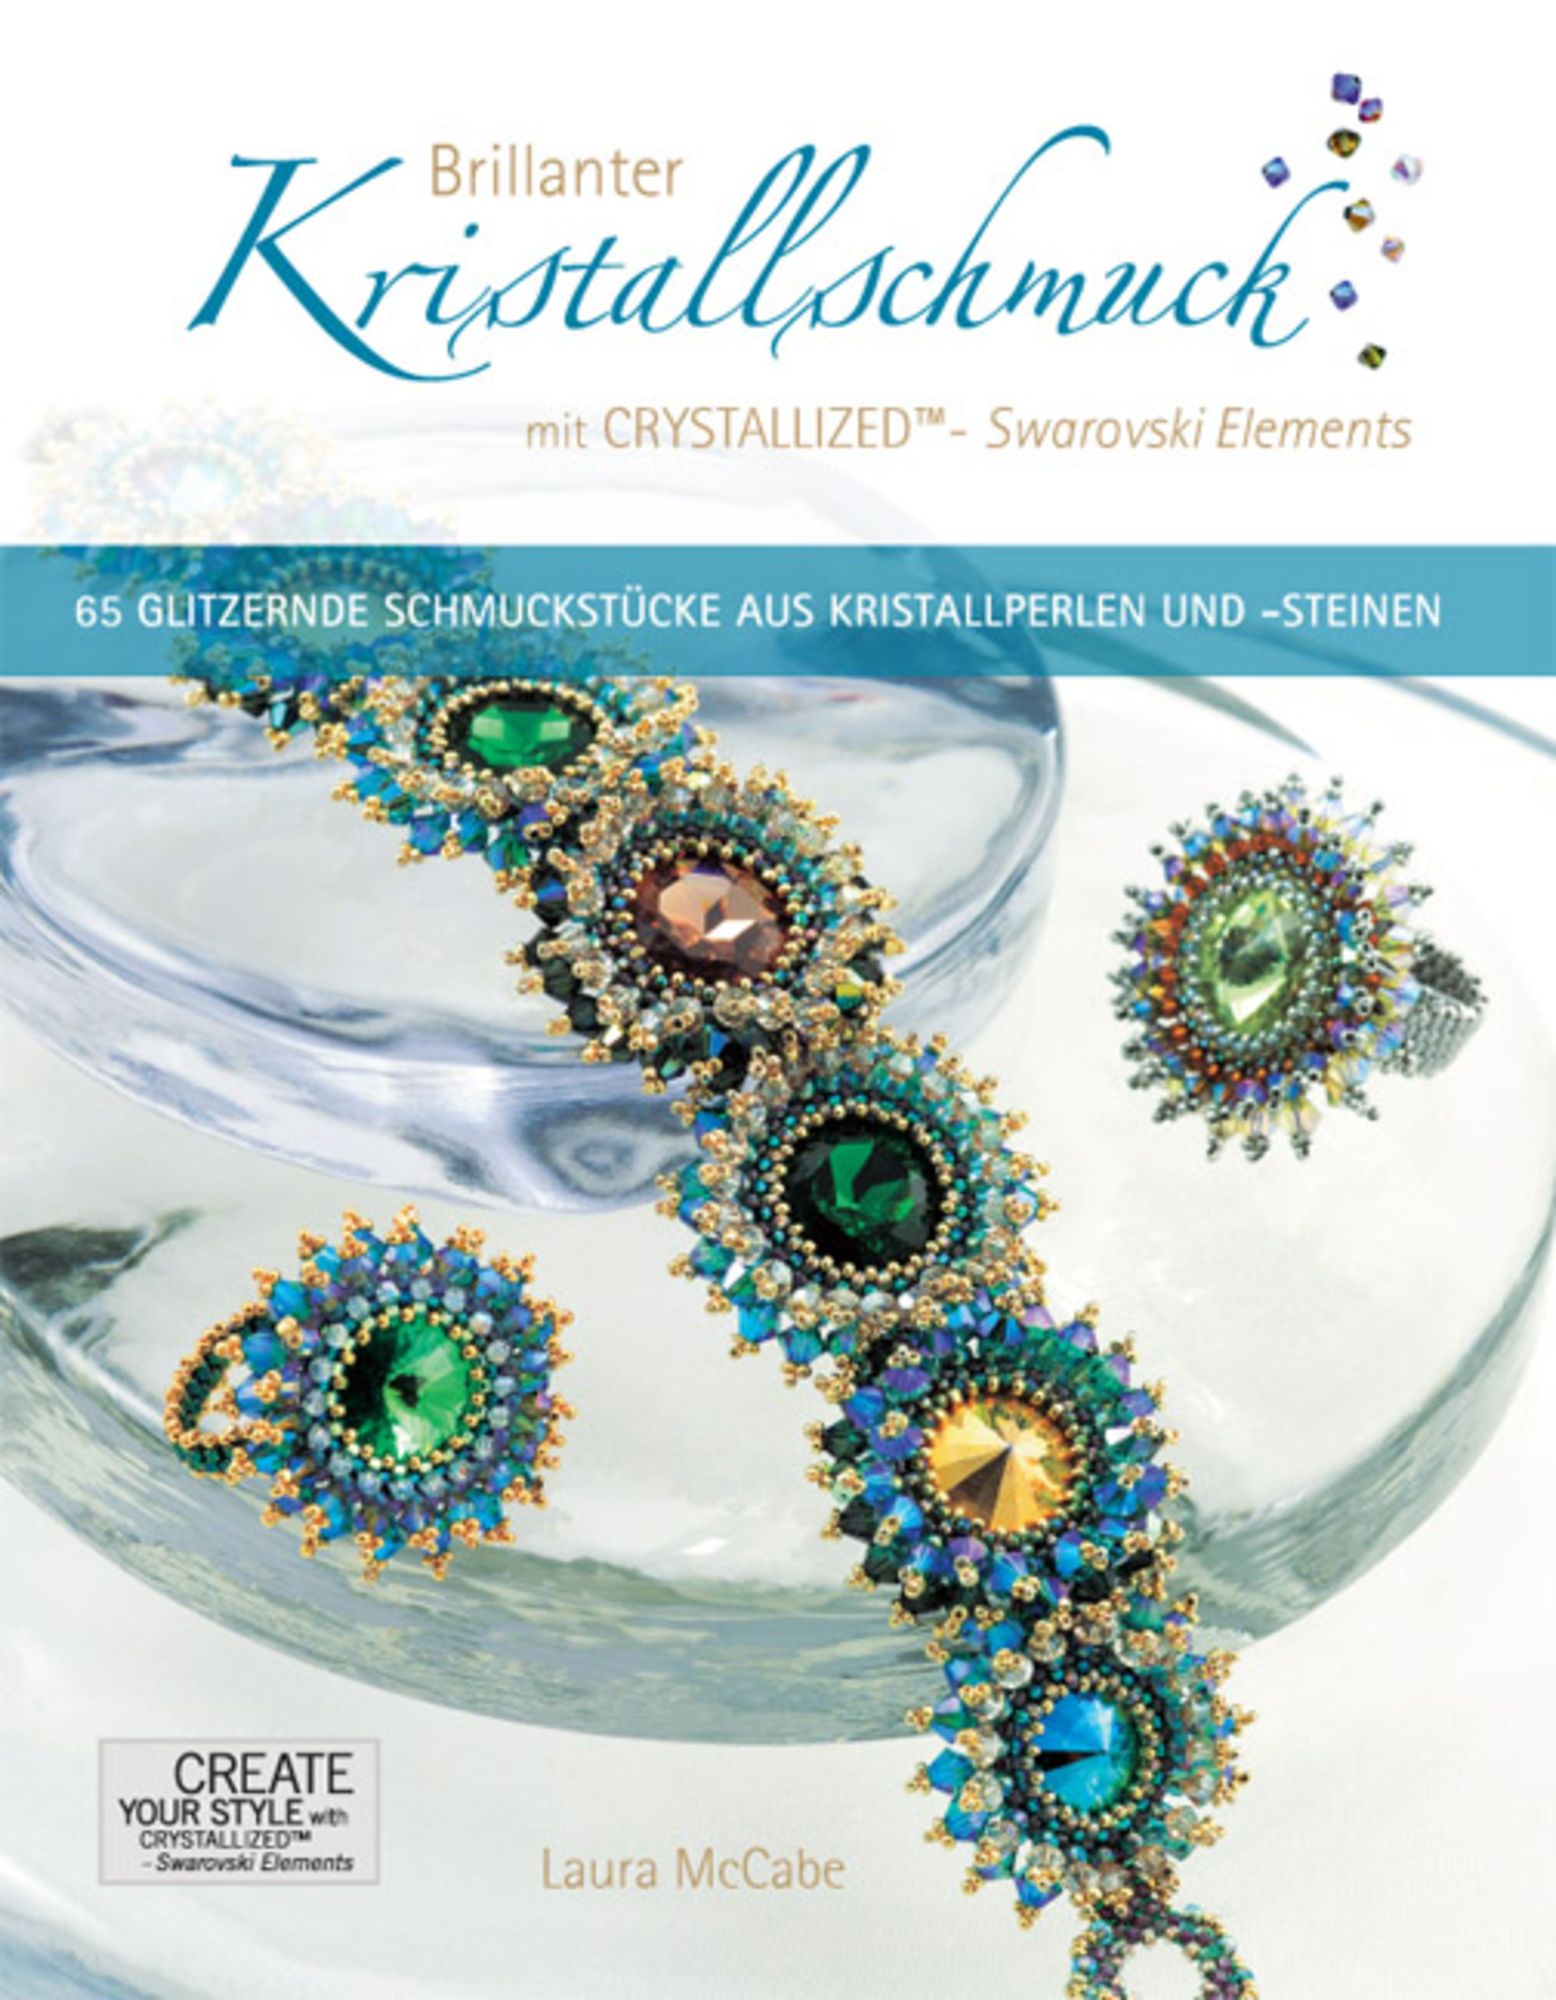 \'978-3-940577-00-9\' \'Laura Brillanter Elements\' CRYSTALLIZED™ - - mit Kristallschmuck Swarovski Buch McCabe\' von -